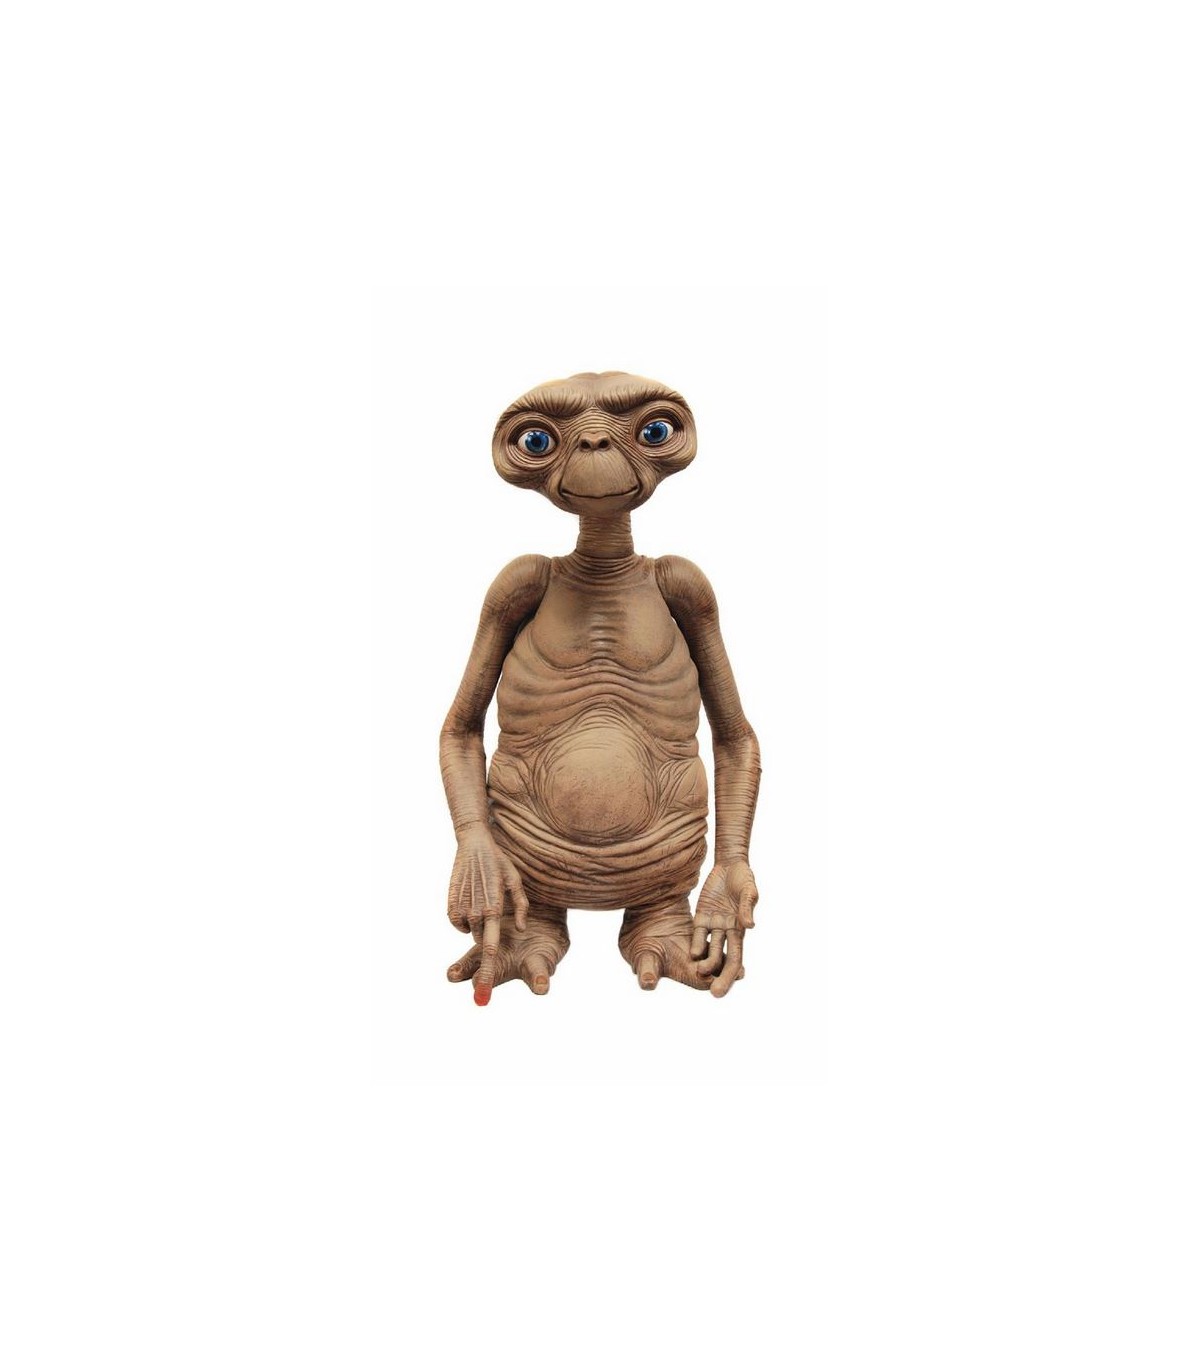 Muñeco original de E.T. el extraterrestre fue subastado por 2.6 mdd